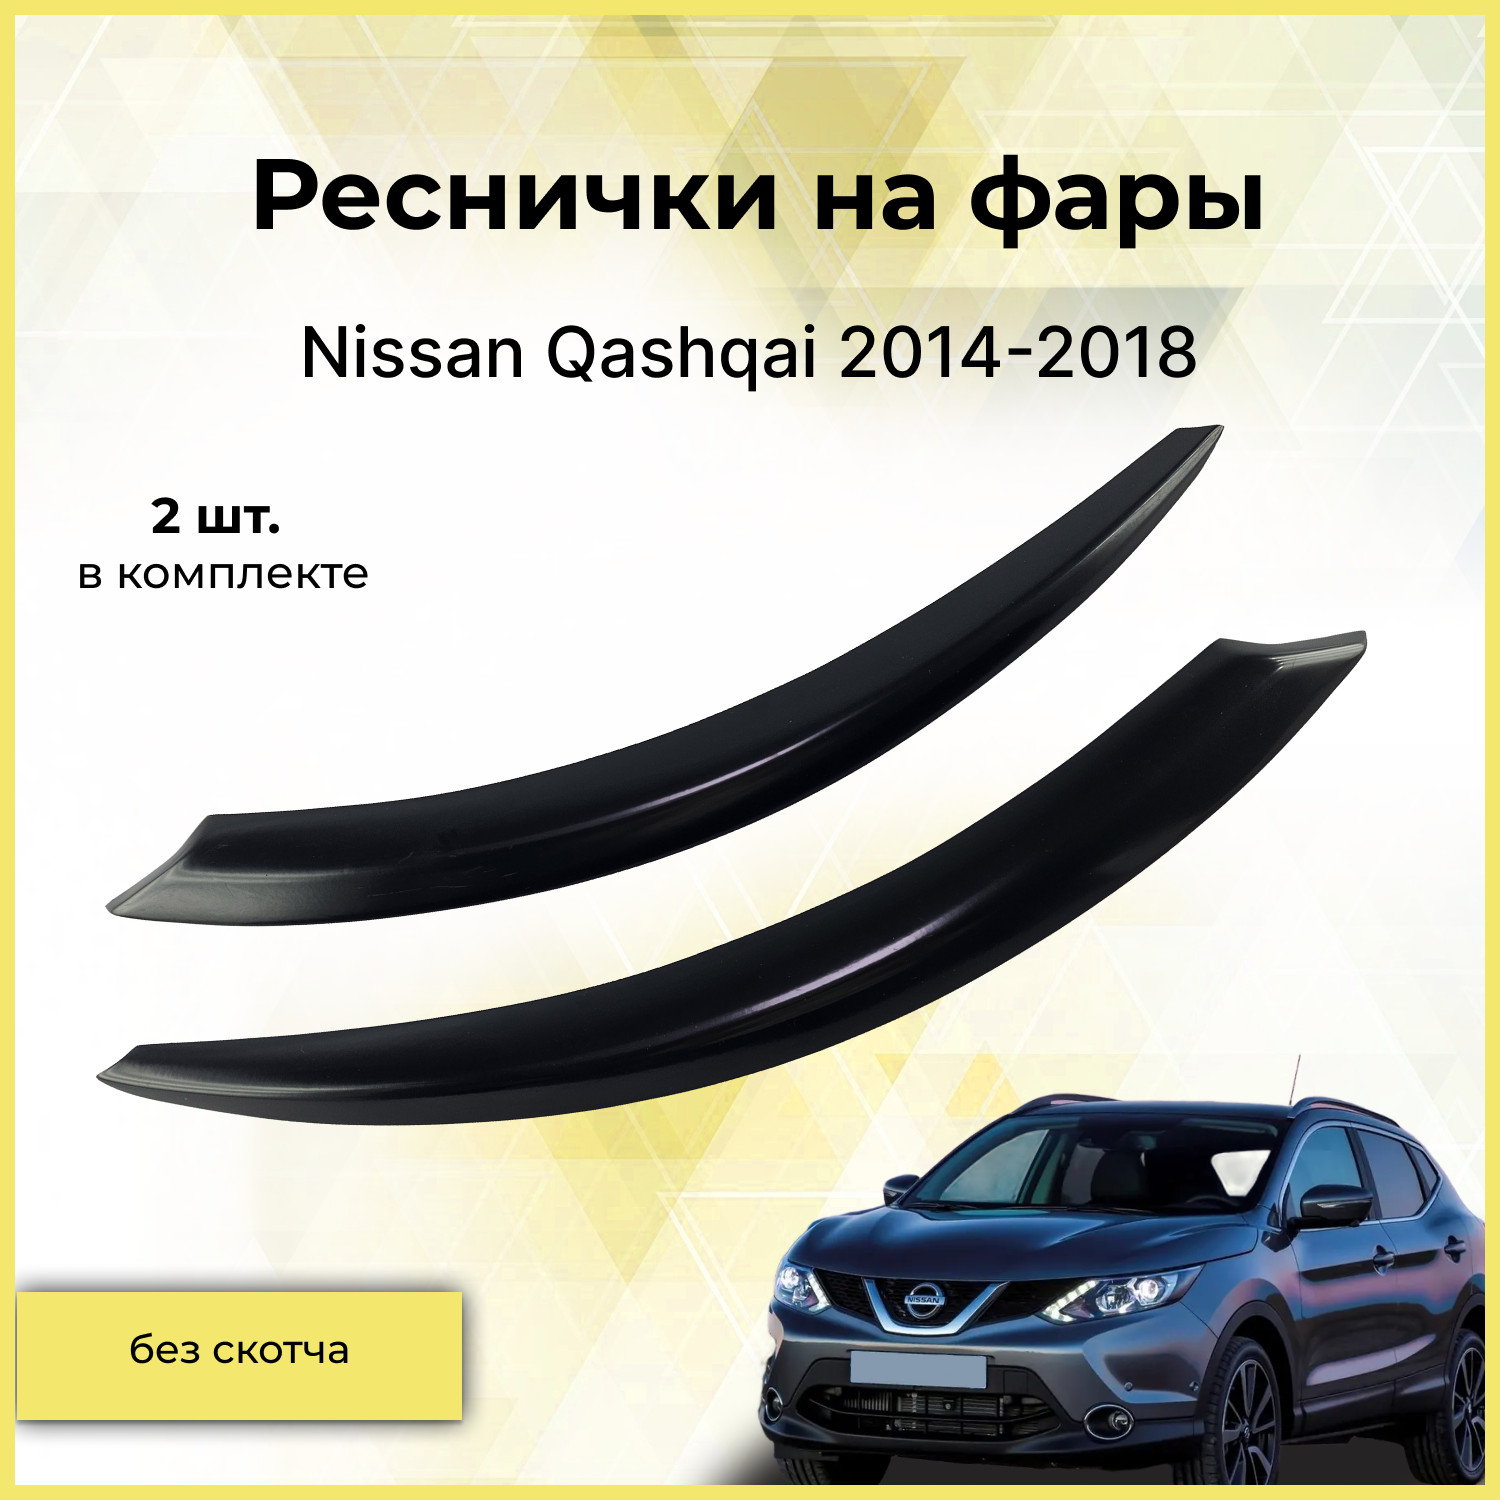 Реснички на фары / Накладки на передние фары для Nissan Qashqai (Ниссан Кашкай) 2014-2018